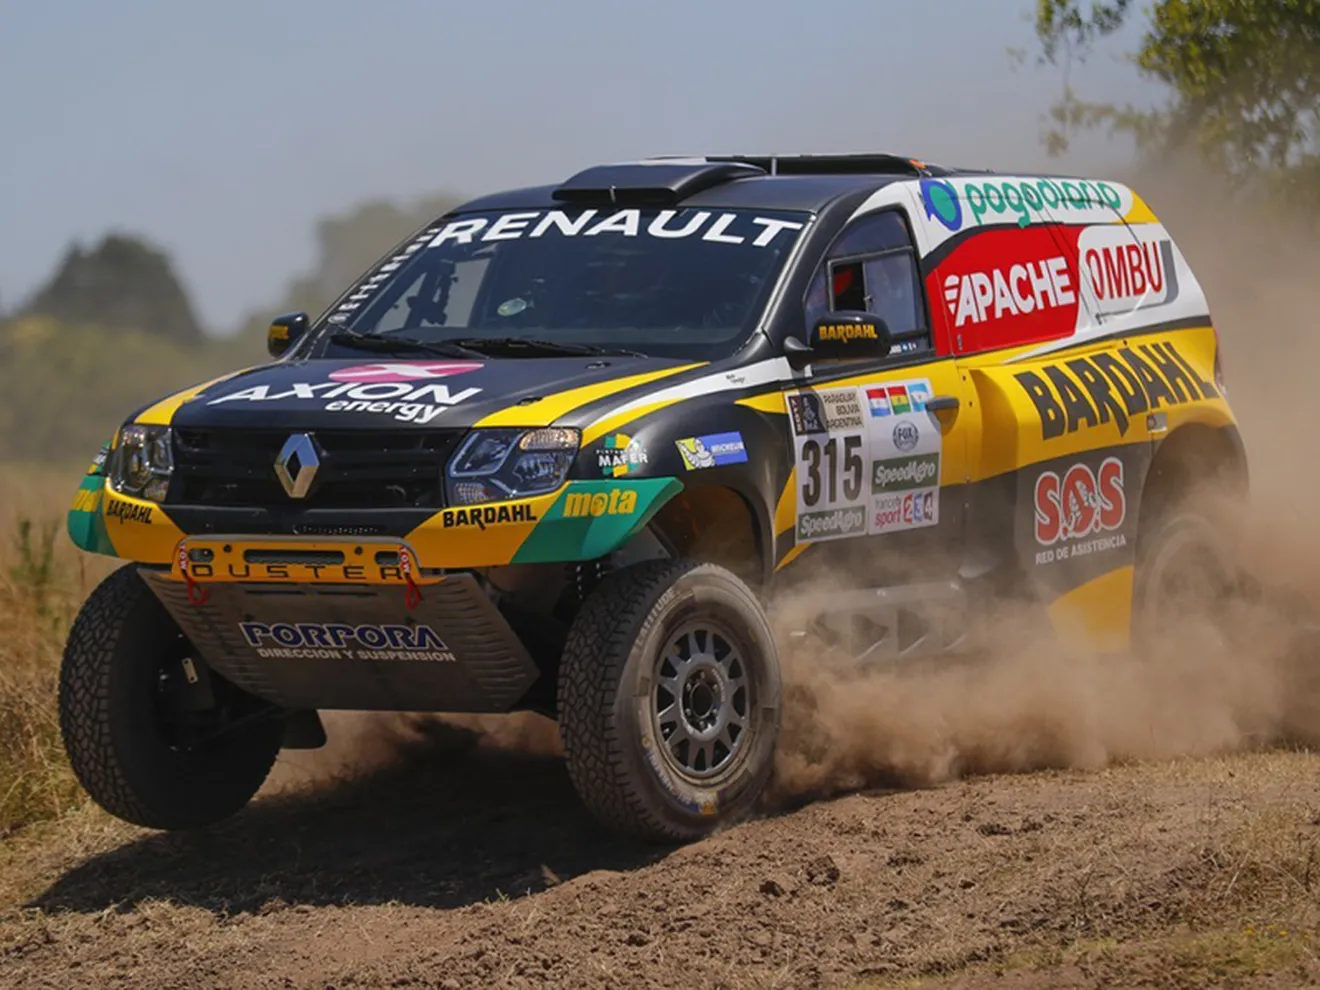 Dakar 2017: Spataro y Ardusso pilotarán los Duster